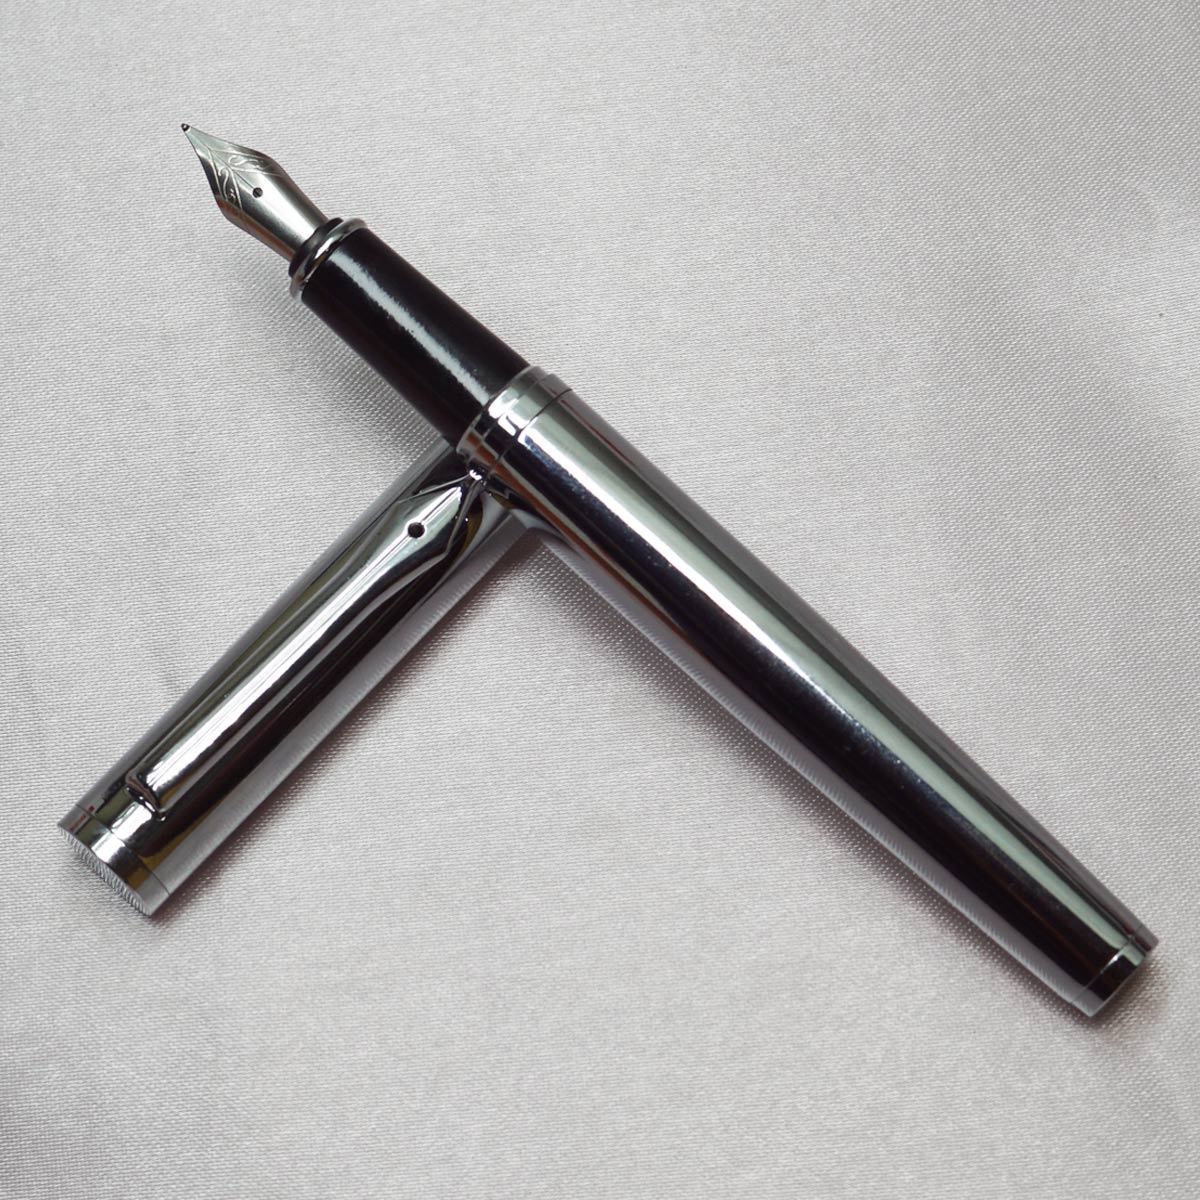 Starone Full Silver Color Body With Silver Cap Fine Nib Converter Type Fountain Pen SKU 22416